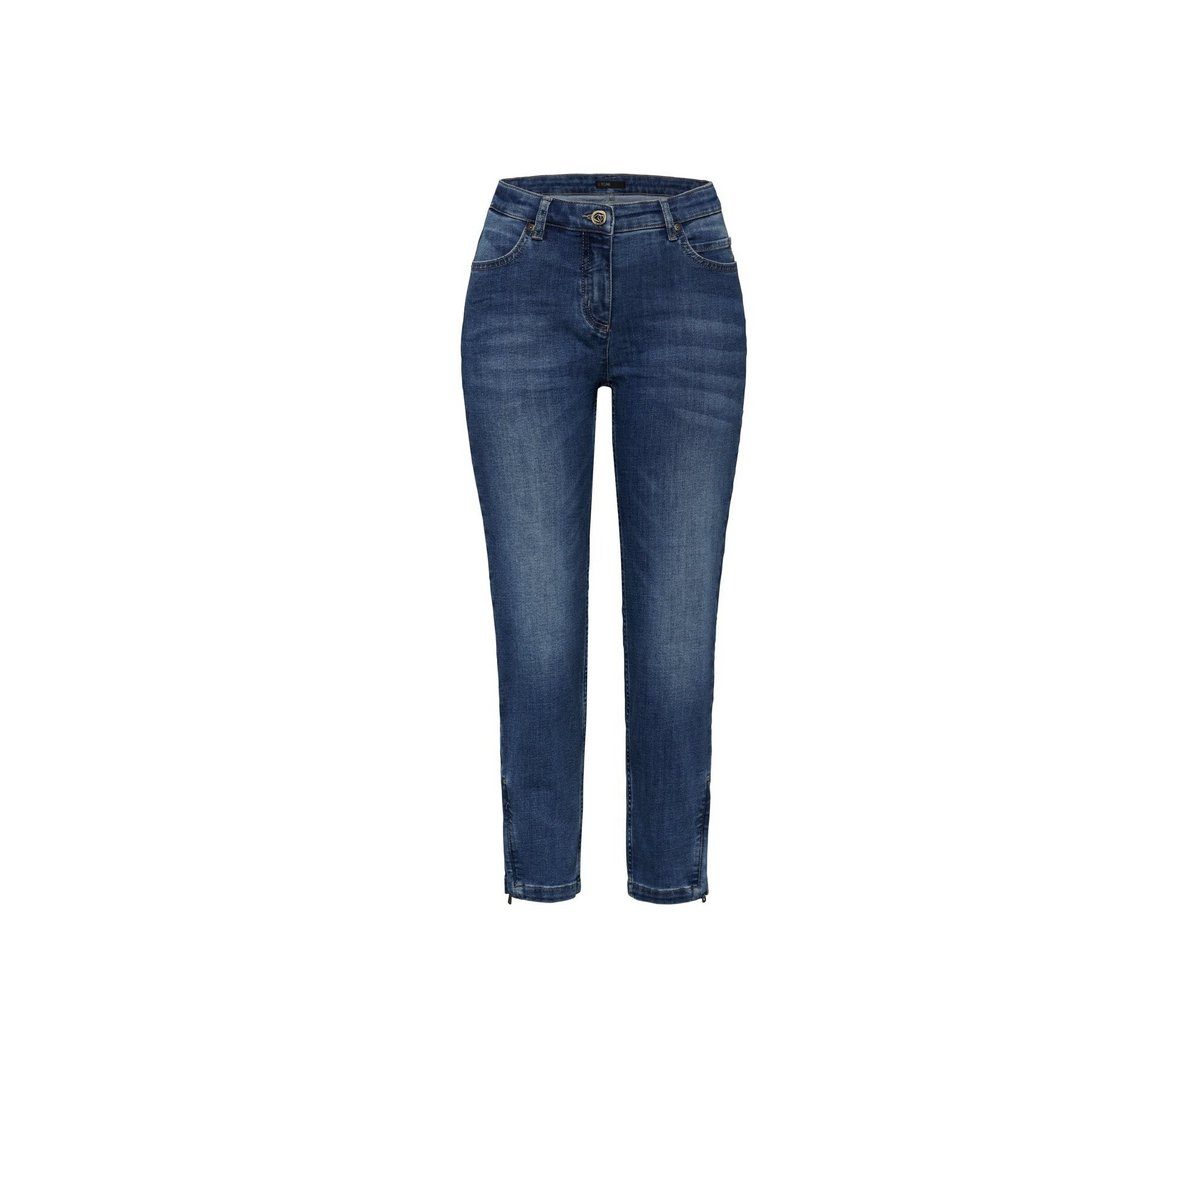 Neues Produkt, Super-Sonderverkauf! TONI 5-Pocket-Jeans blau (1-tlg)